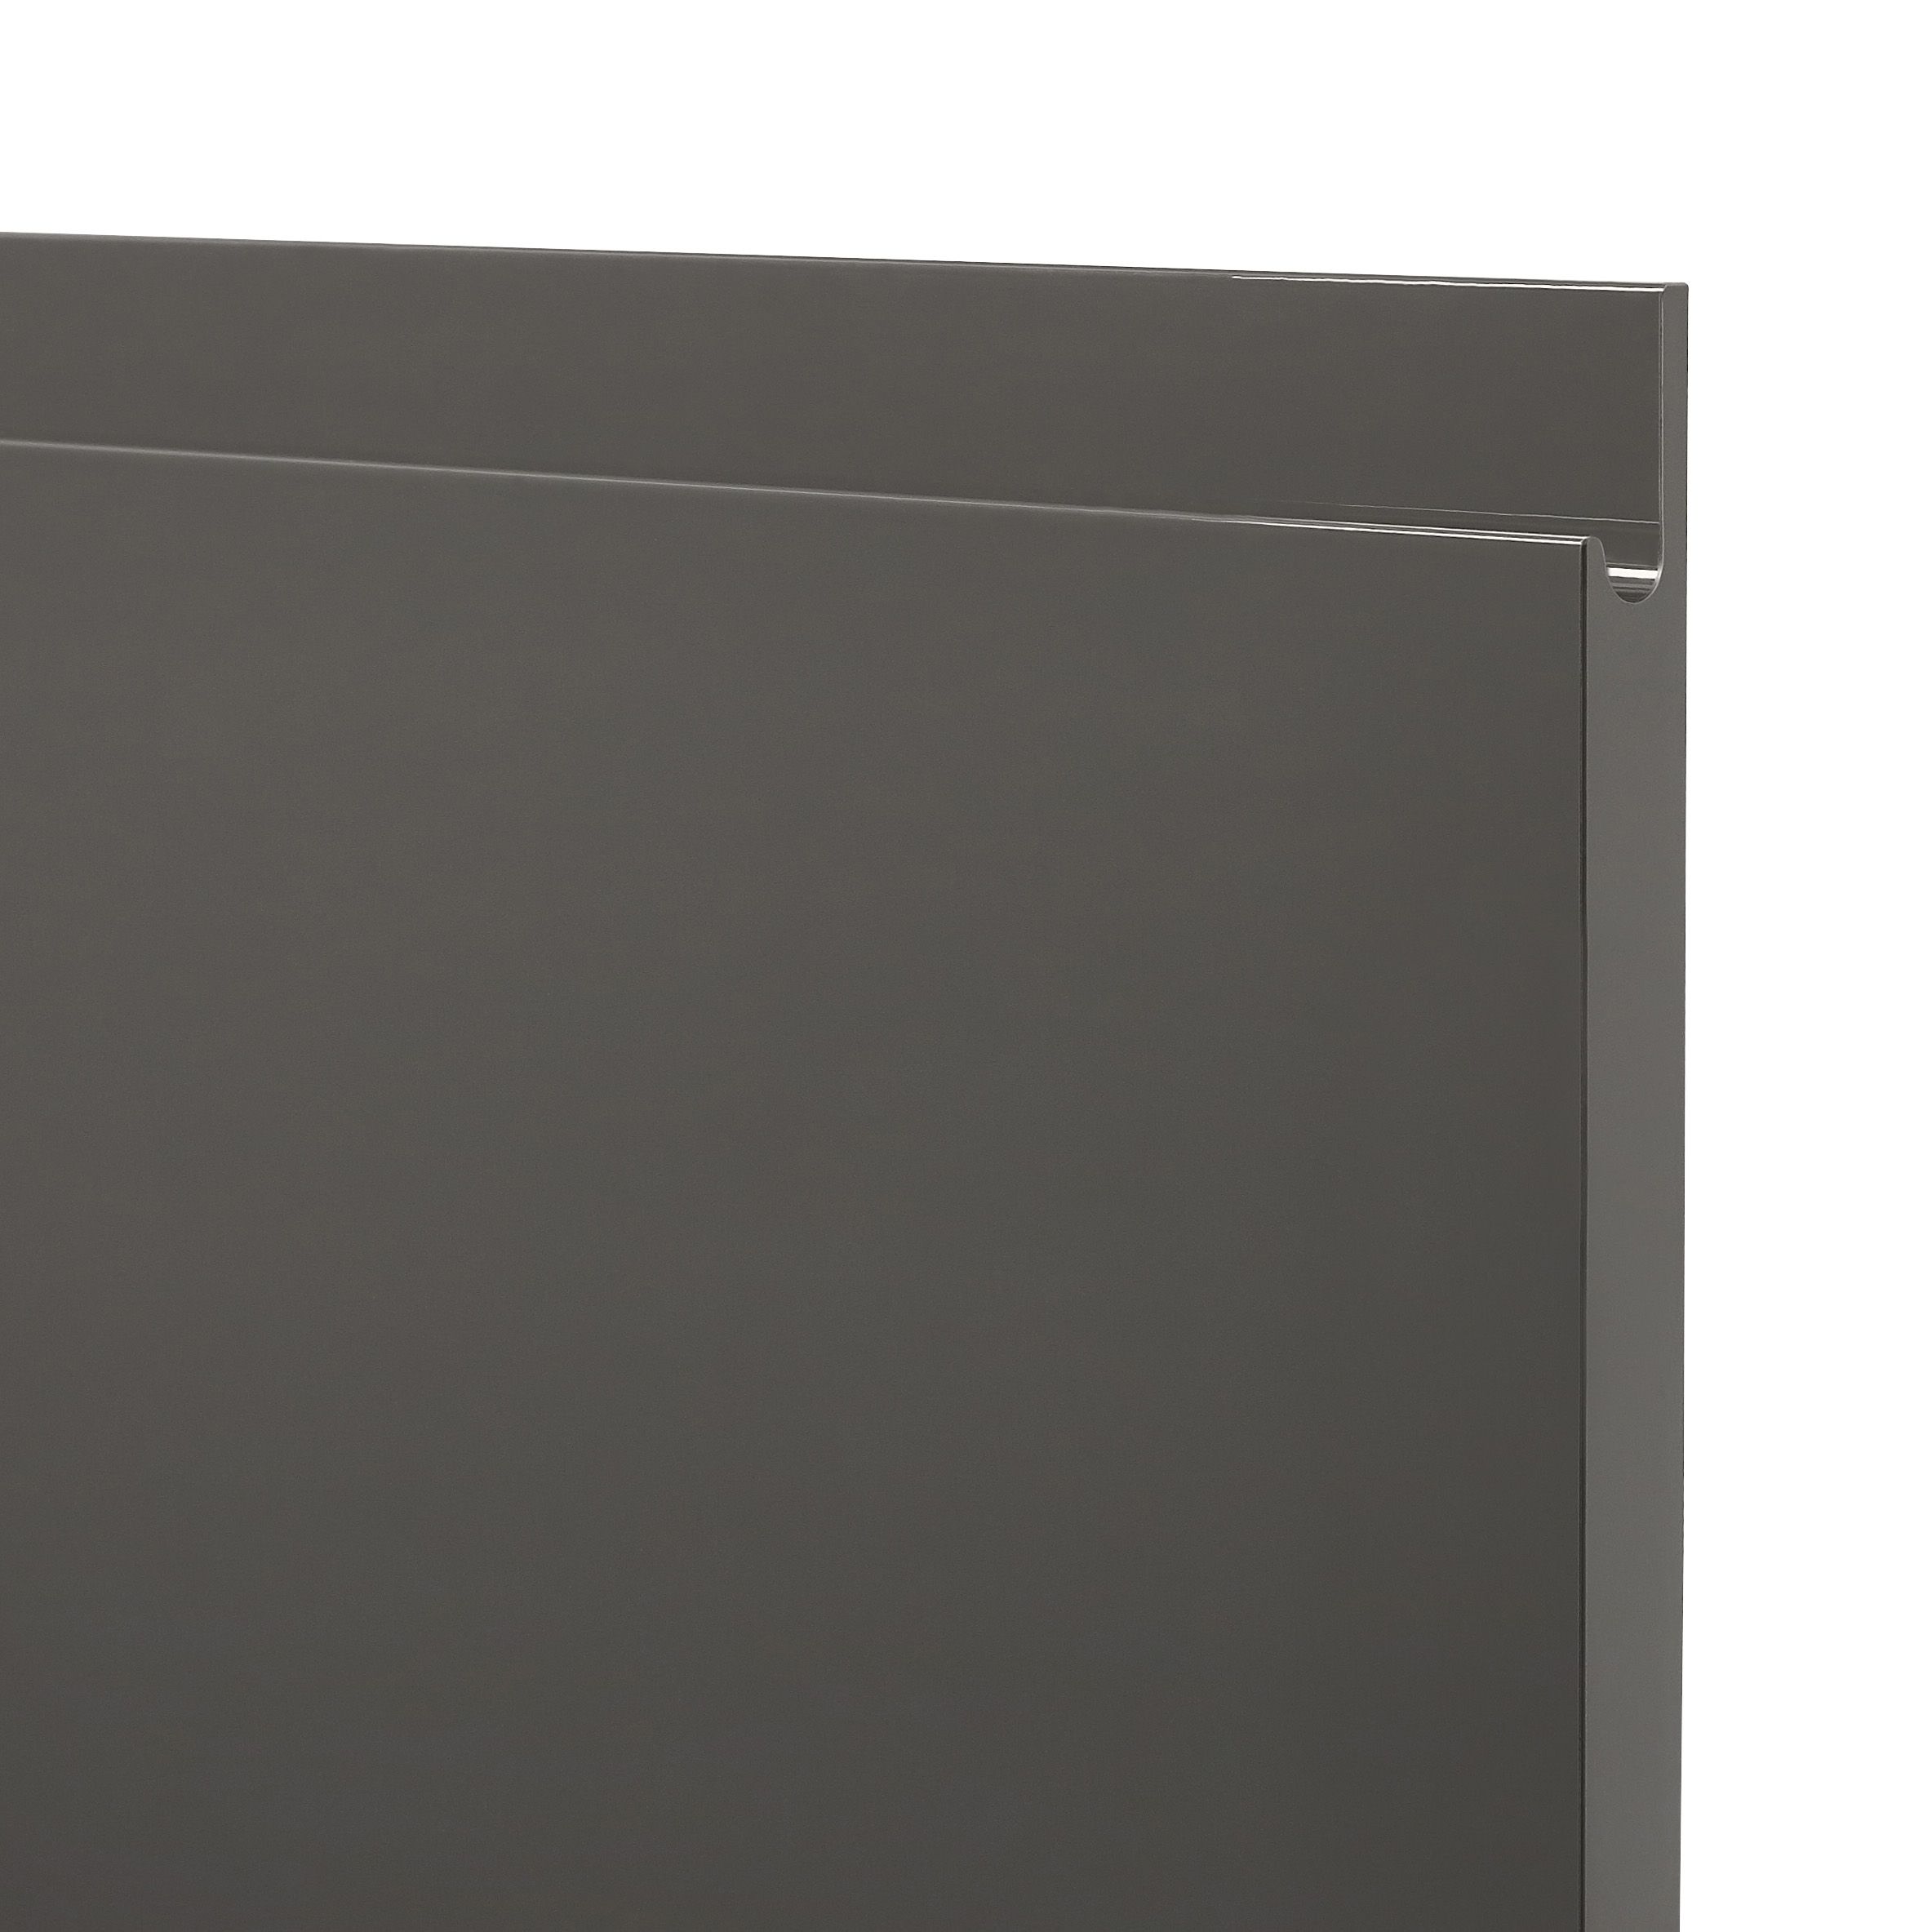 GoodHome Garcinia Gloss anthracite Drawer front, bridging door & bi fold door, (W)800mm (H)356mm (T)19mm